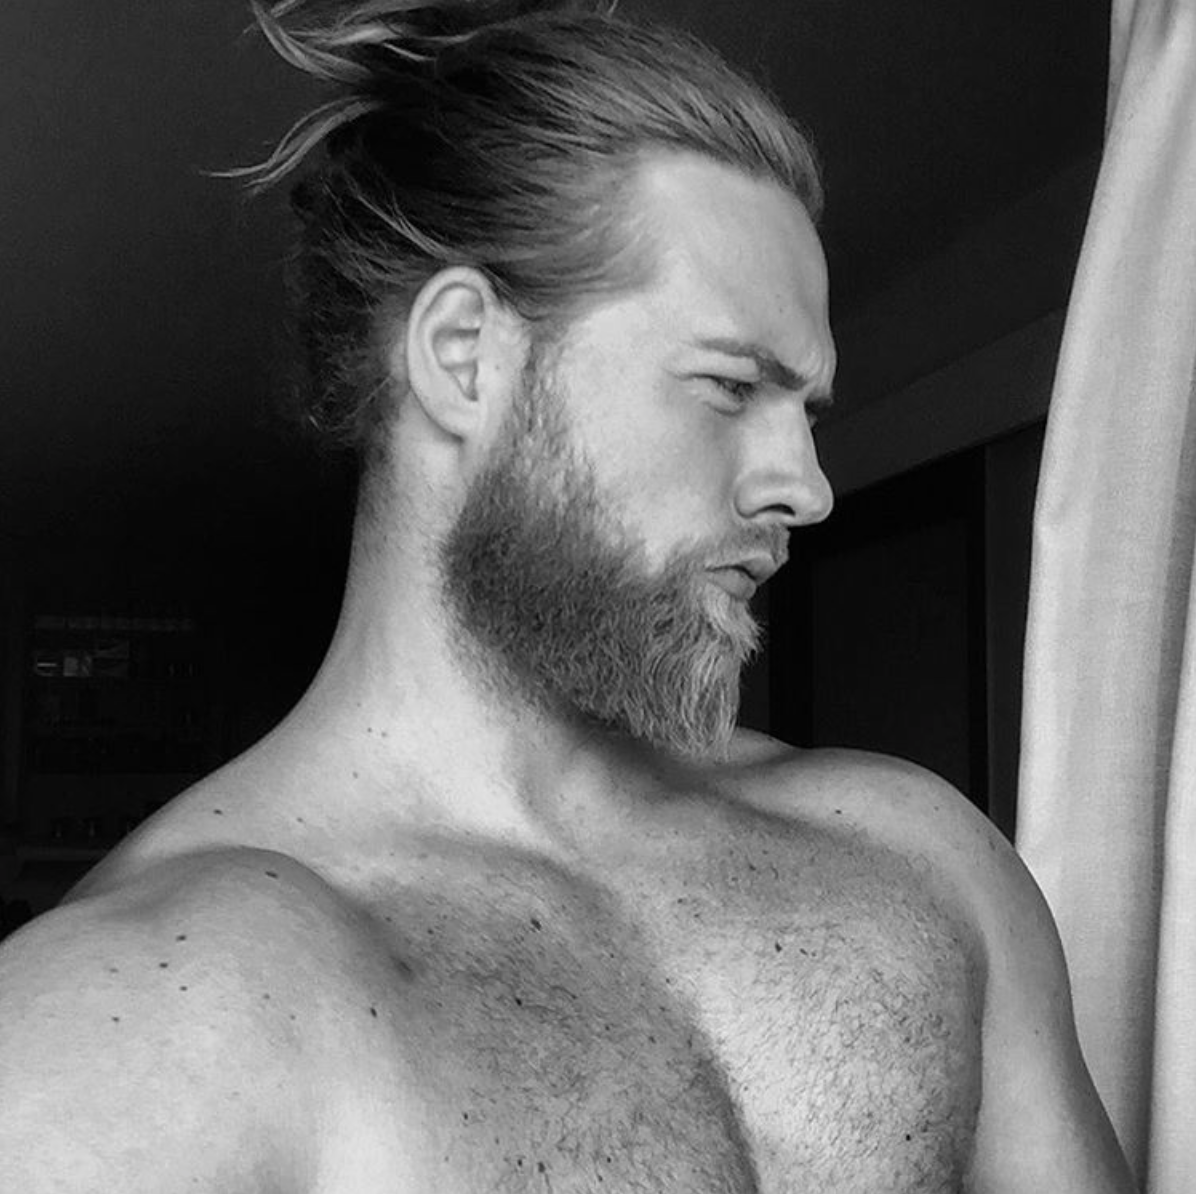 “El vikingo” sexy que arrasa en las redes sociales